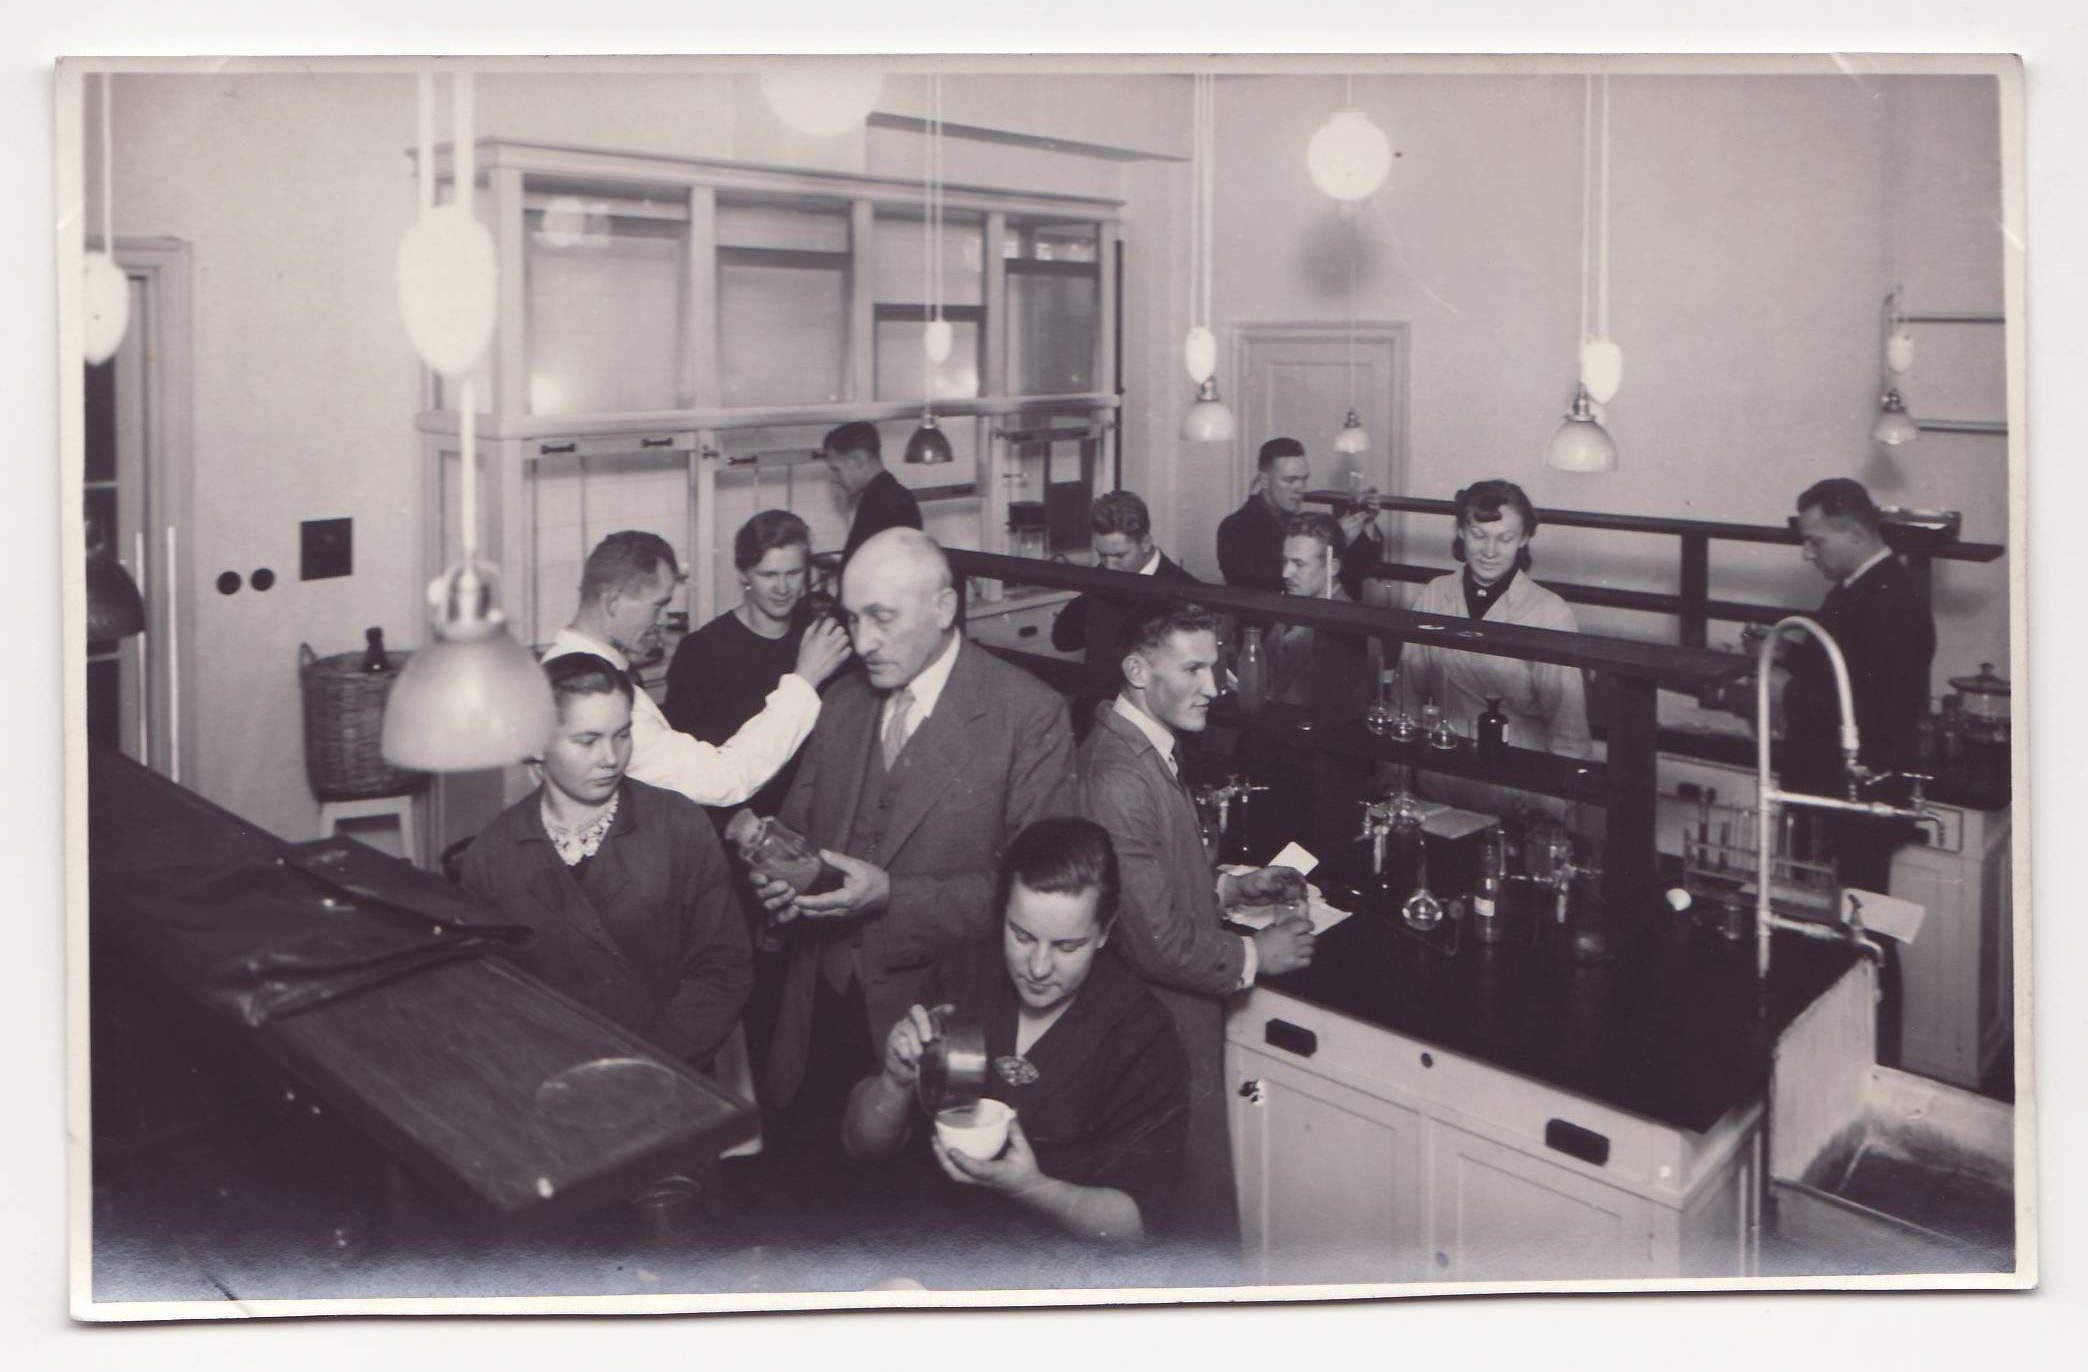 <p style="margin-bottom:11px"><strong>ĶĪMIJAS LABORATORIJA</strong></p>  <p>Arhitekta Eižena Laubes projektā Ķīmijas un Fizikas laboratorijas atradās 1937. gadā uzbūvētās pils korpusa 3. stāvā.</p>  <p>Mūsdienās Ķīmijas laboratorija atrodas Rietumu korpusa 1. un 2. stāvos.</p>  <p><em>Foto no 1939. gada albuma</em></p>